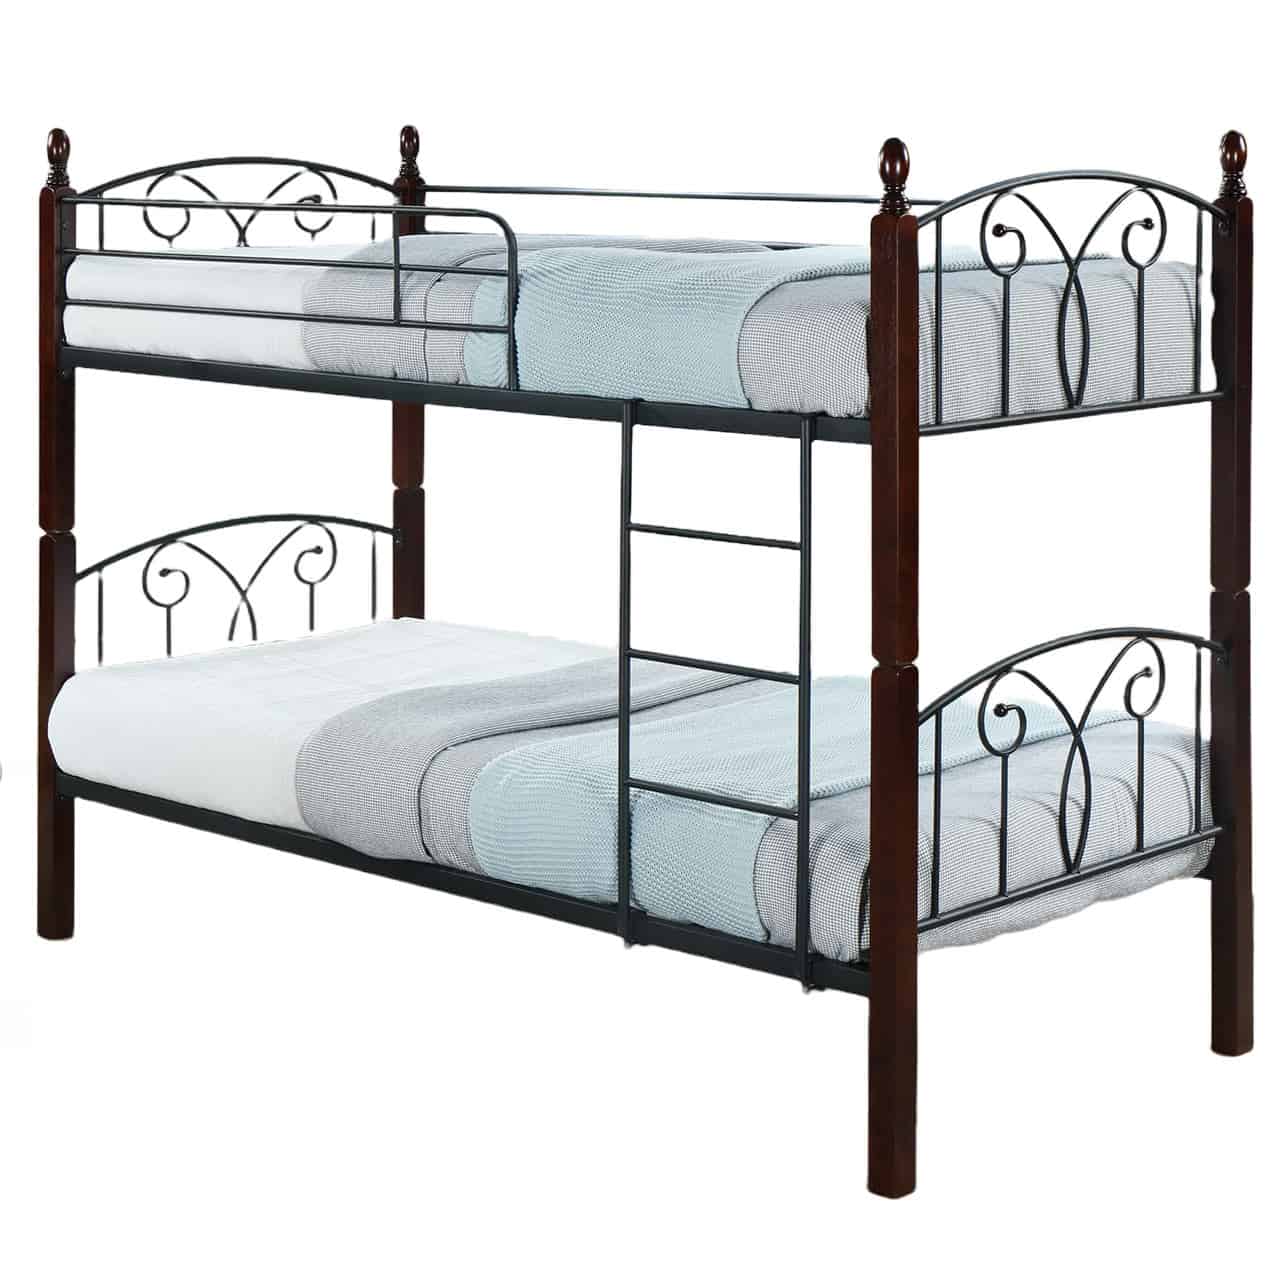 Wooden & Steel Bunk Bed